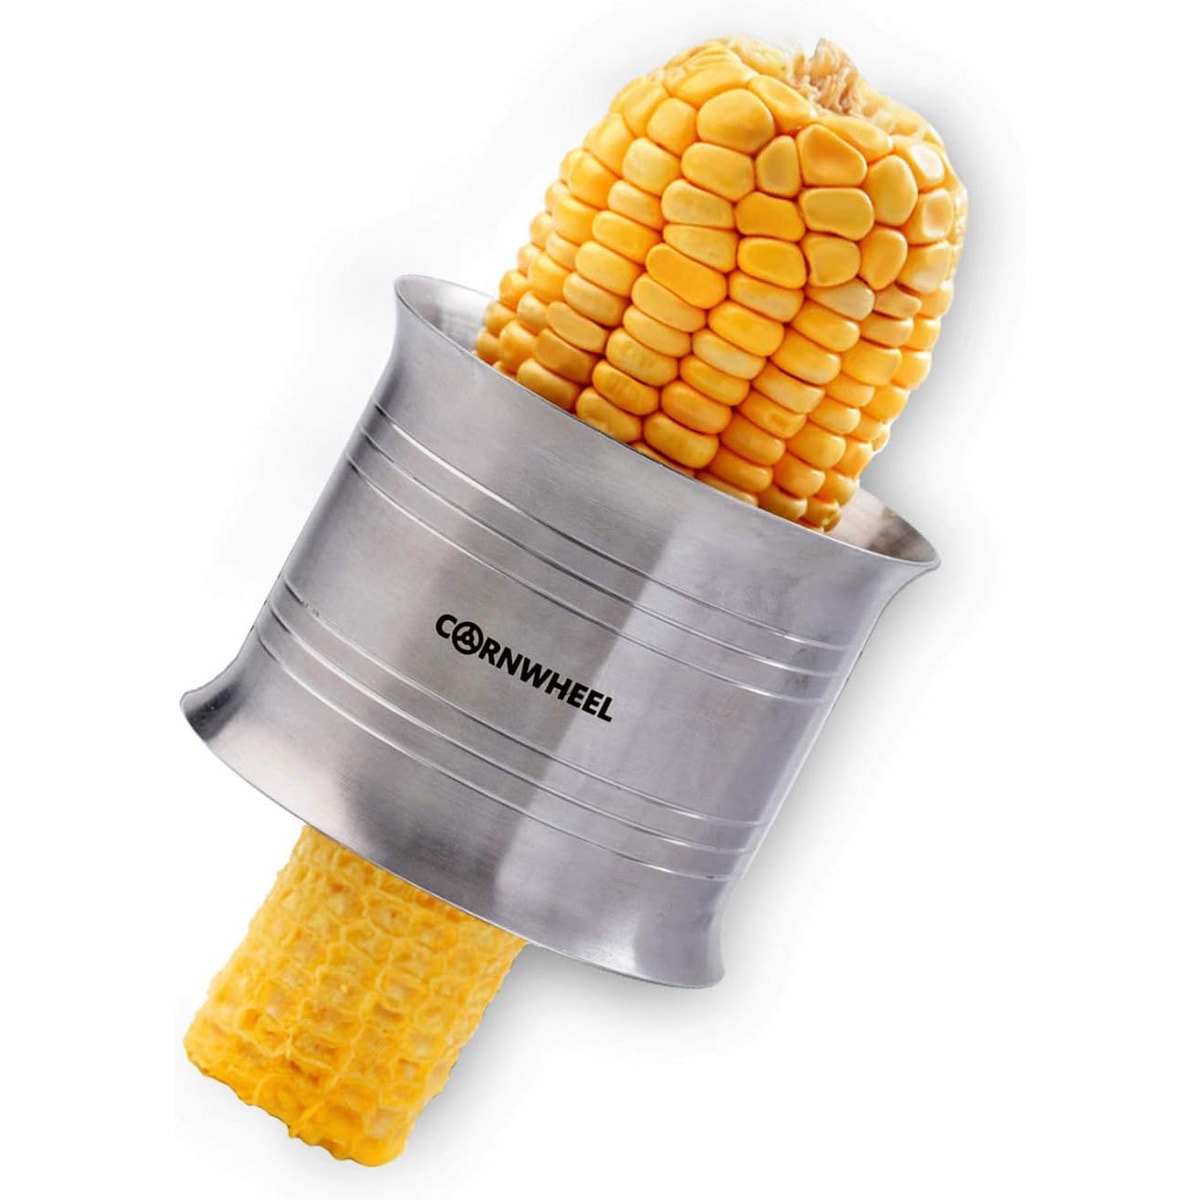 Cob corn stripper.